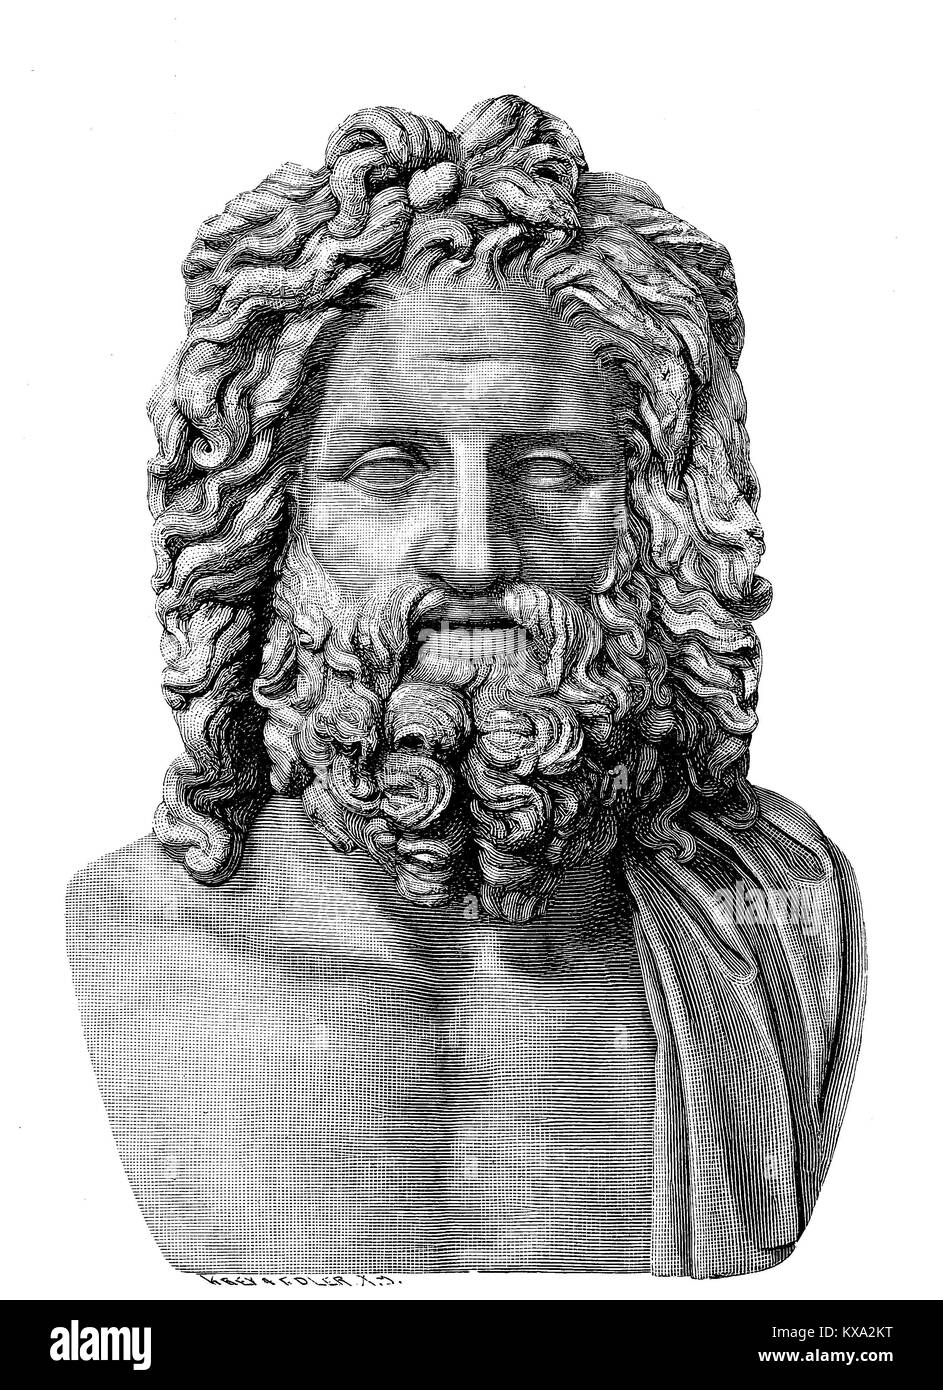 L'antique buste en marbre de Zeus de Otricoli se trouve au Vatican, à Rome, Italie, amélioration numérique reproduction à partir d'un original gravure sur bois ou de l'illustration à partir de l'année 1880 Banque D'Images